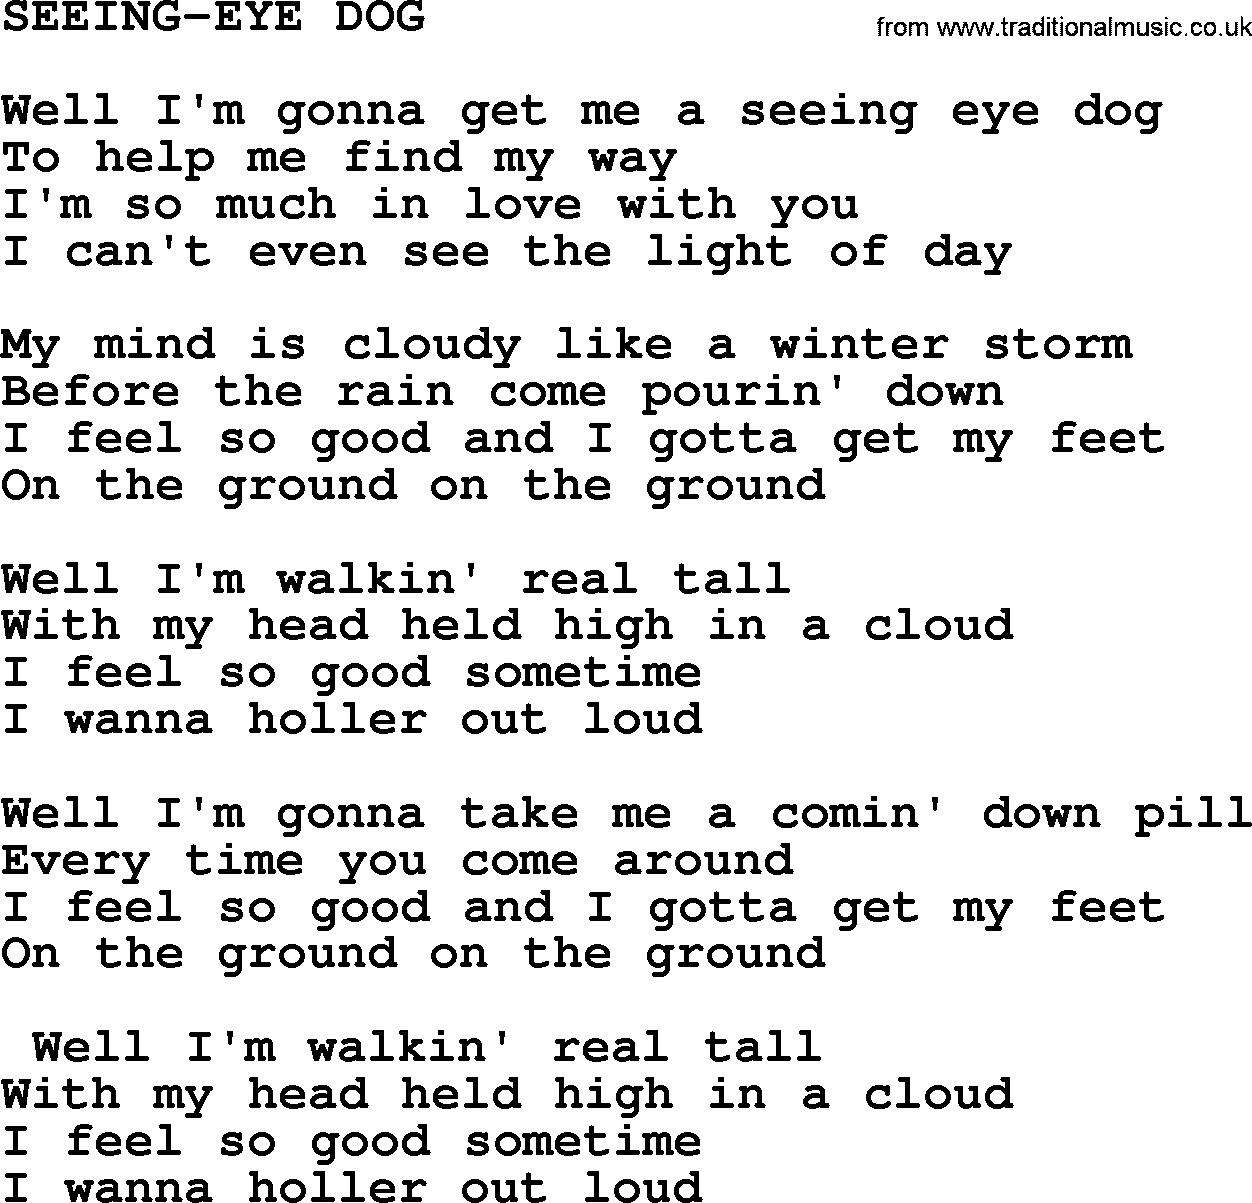 Merle Haggard song: Seeing-eye Dog, lyrics.